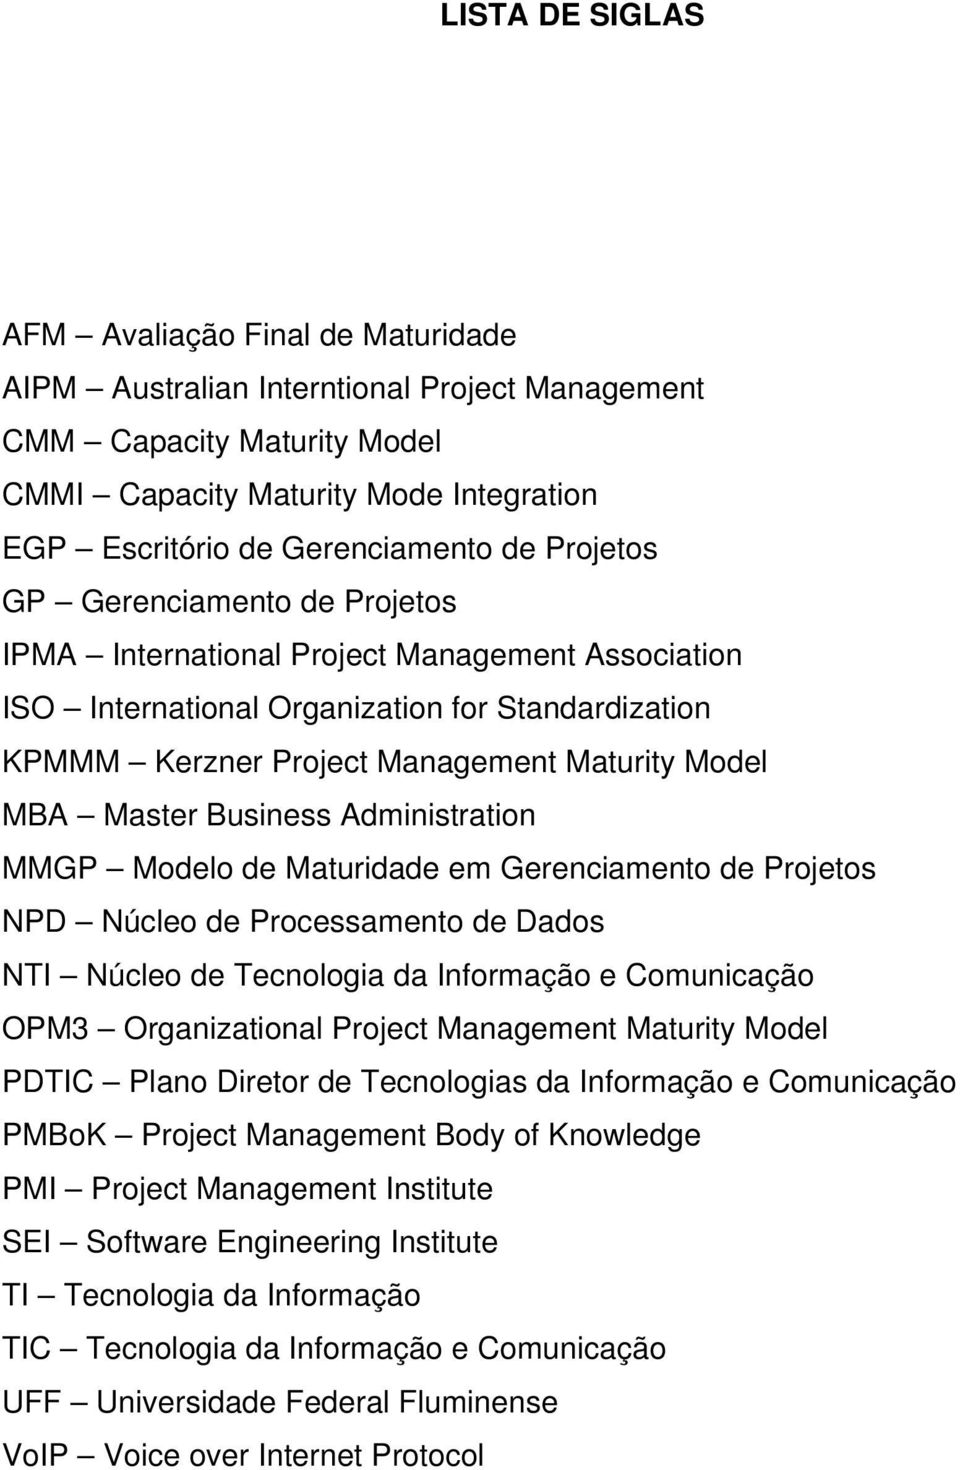 Model MBA Master Business Administration MMGP Modelo de Maturidade em Gerenciamento de Projetos NPD Núcleo de Processamento de Dados NTI Núcleo de Tecnologia da Informação e Comunicação OPM3